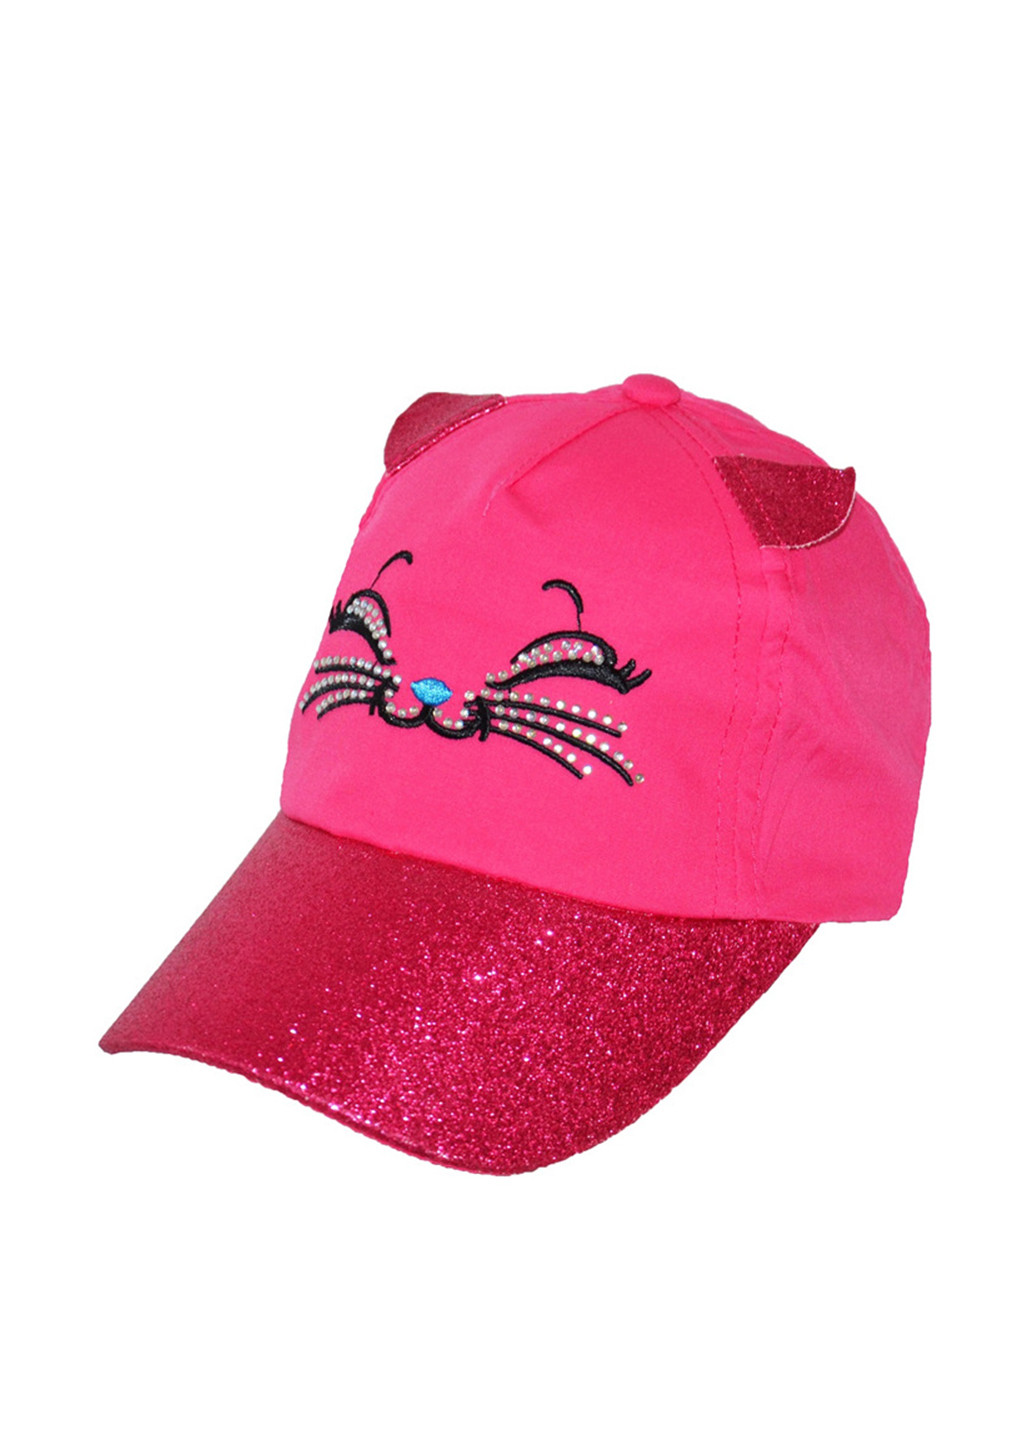 Кепка Sweet Hats кошки розовая кэжуал